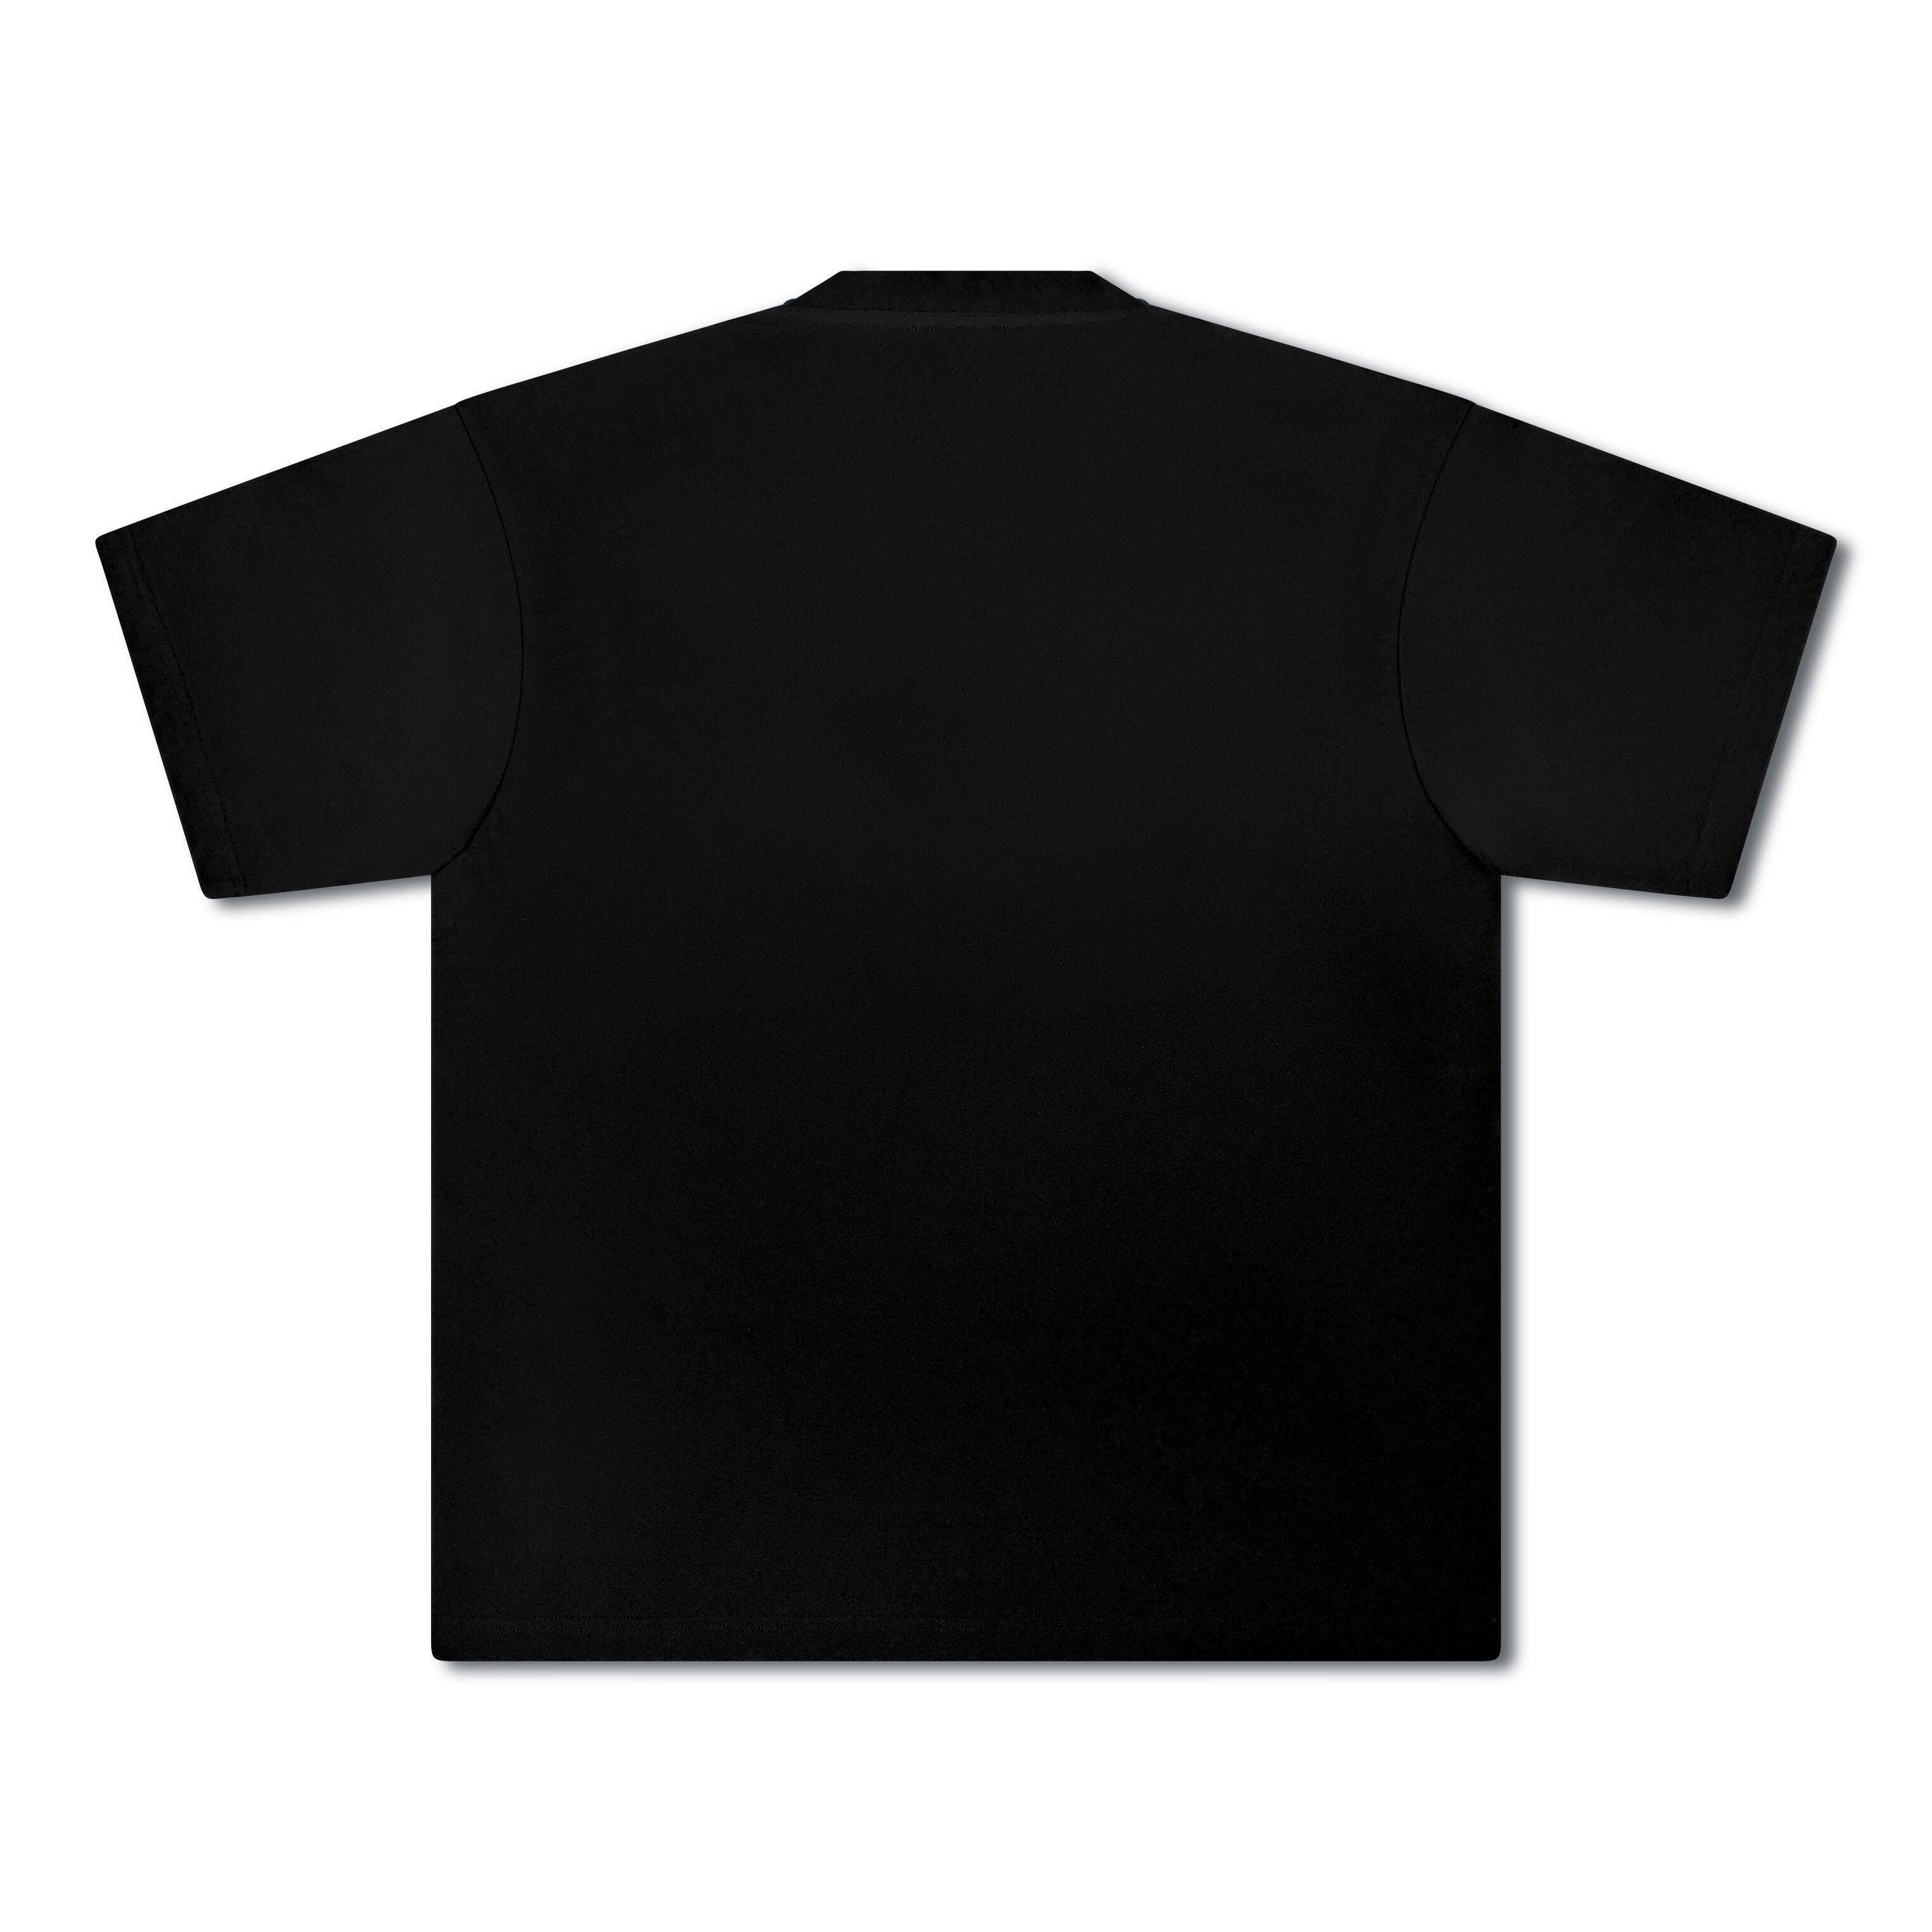 Voclain T-Shirt Black Graffitti Drip Paris X Miami